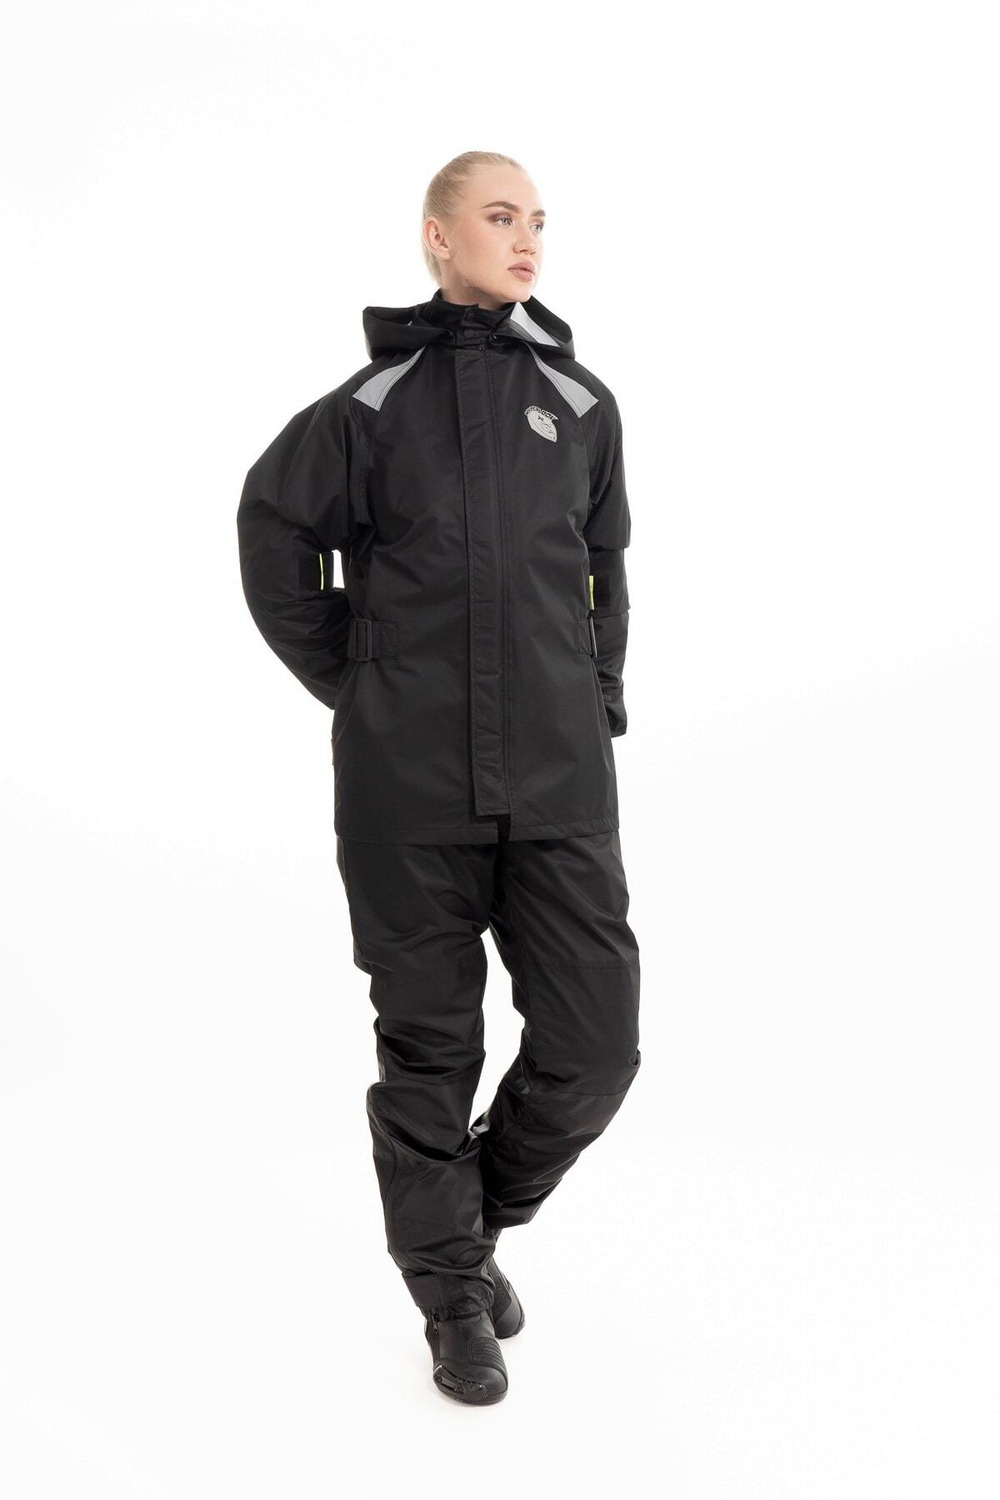 HYPERLOOK Мотодождевик женский костюм Garda Woman Black черный